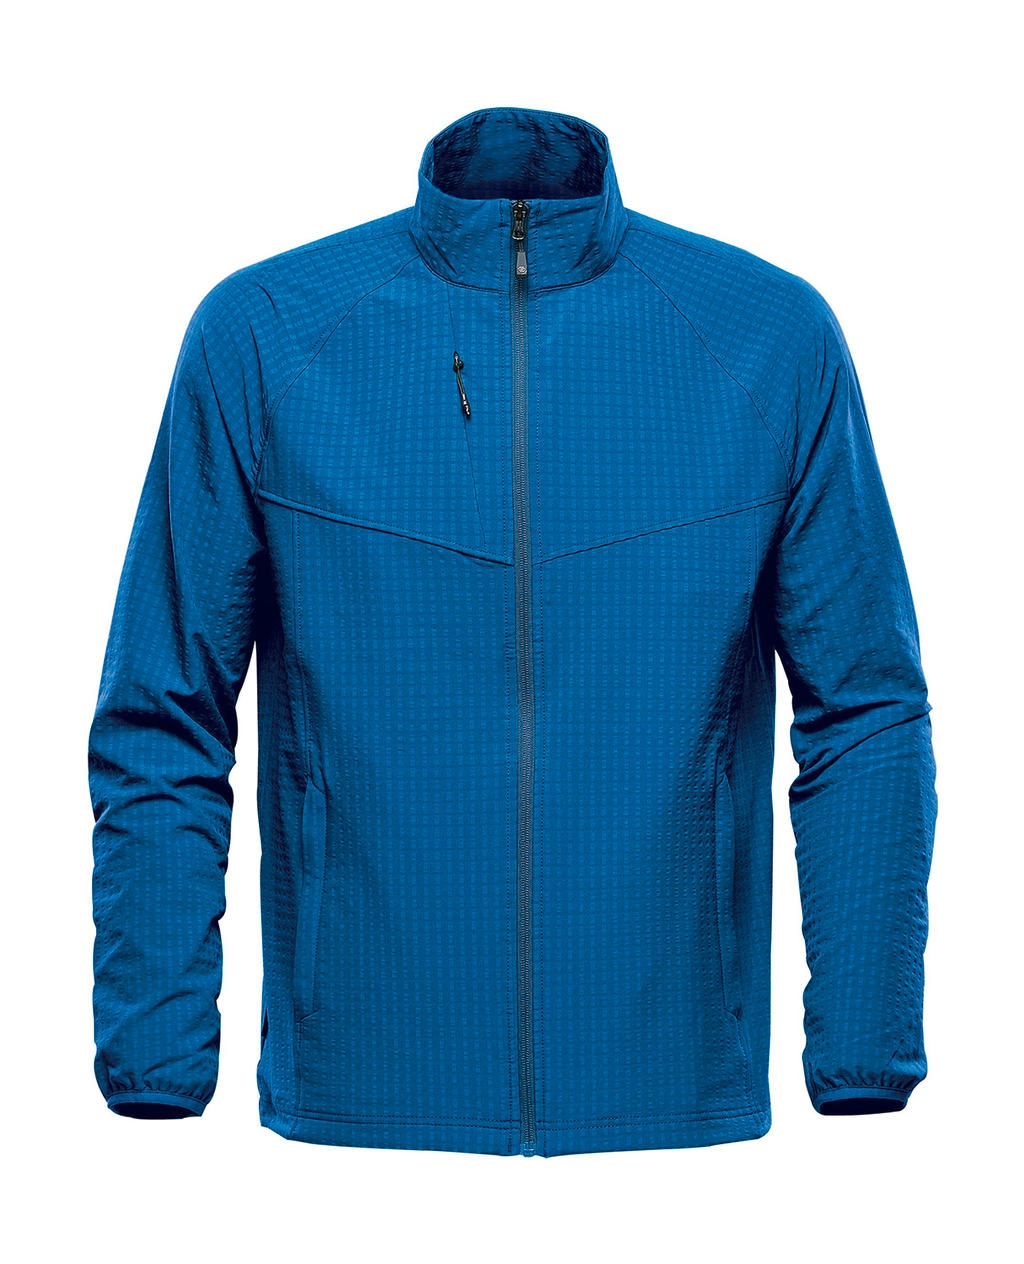 Kyoto Jacket zum Besticken und Bedrucken in der Farbe Classic Blue mit Ihren Logo, Schriftzug oder Motiv.